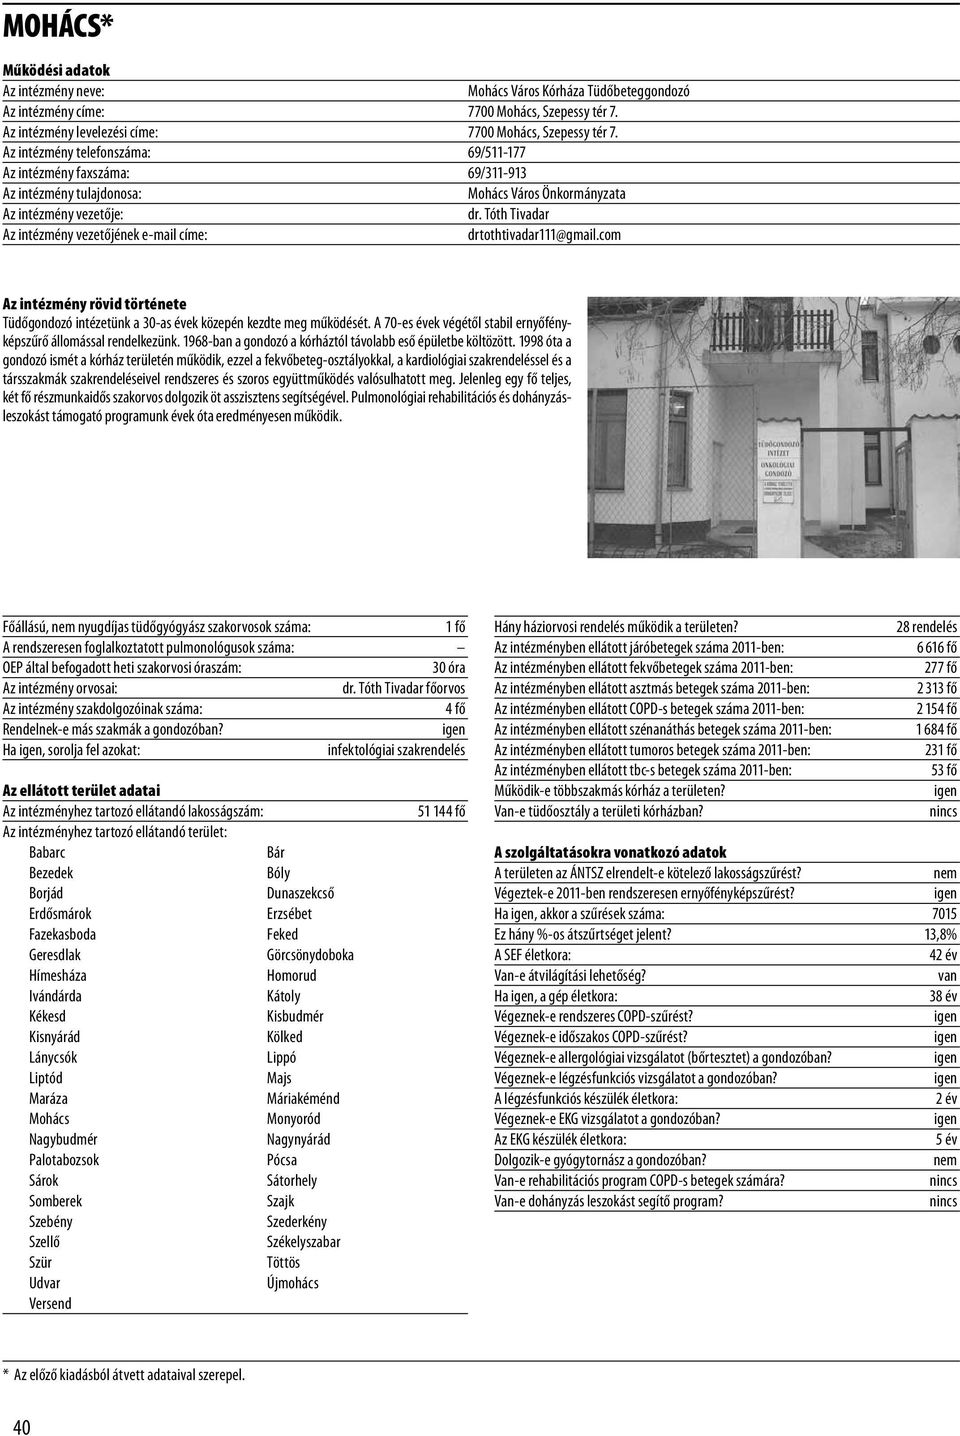 PÉCS* Működési adatok Pécsi Tudományegyetem Klinikai Központ I.  Belgyógyászati Klinika, Pulmonológiai Osztály - PDF Ingyenes letöltés